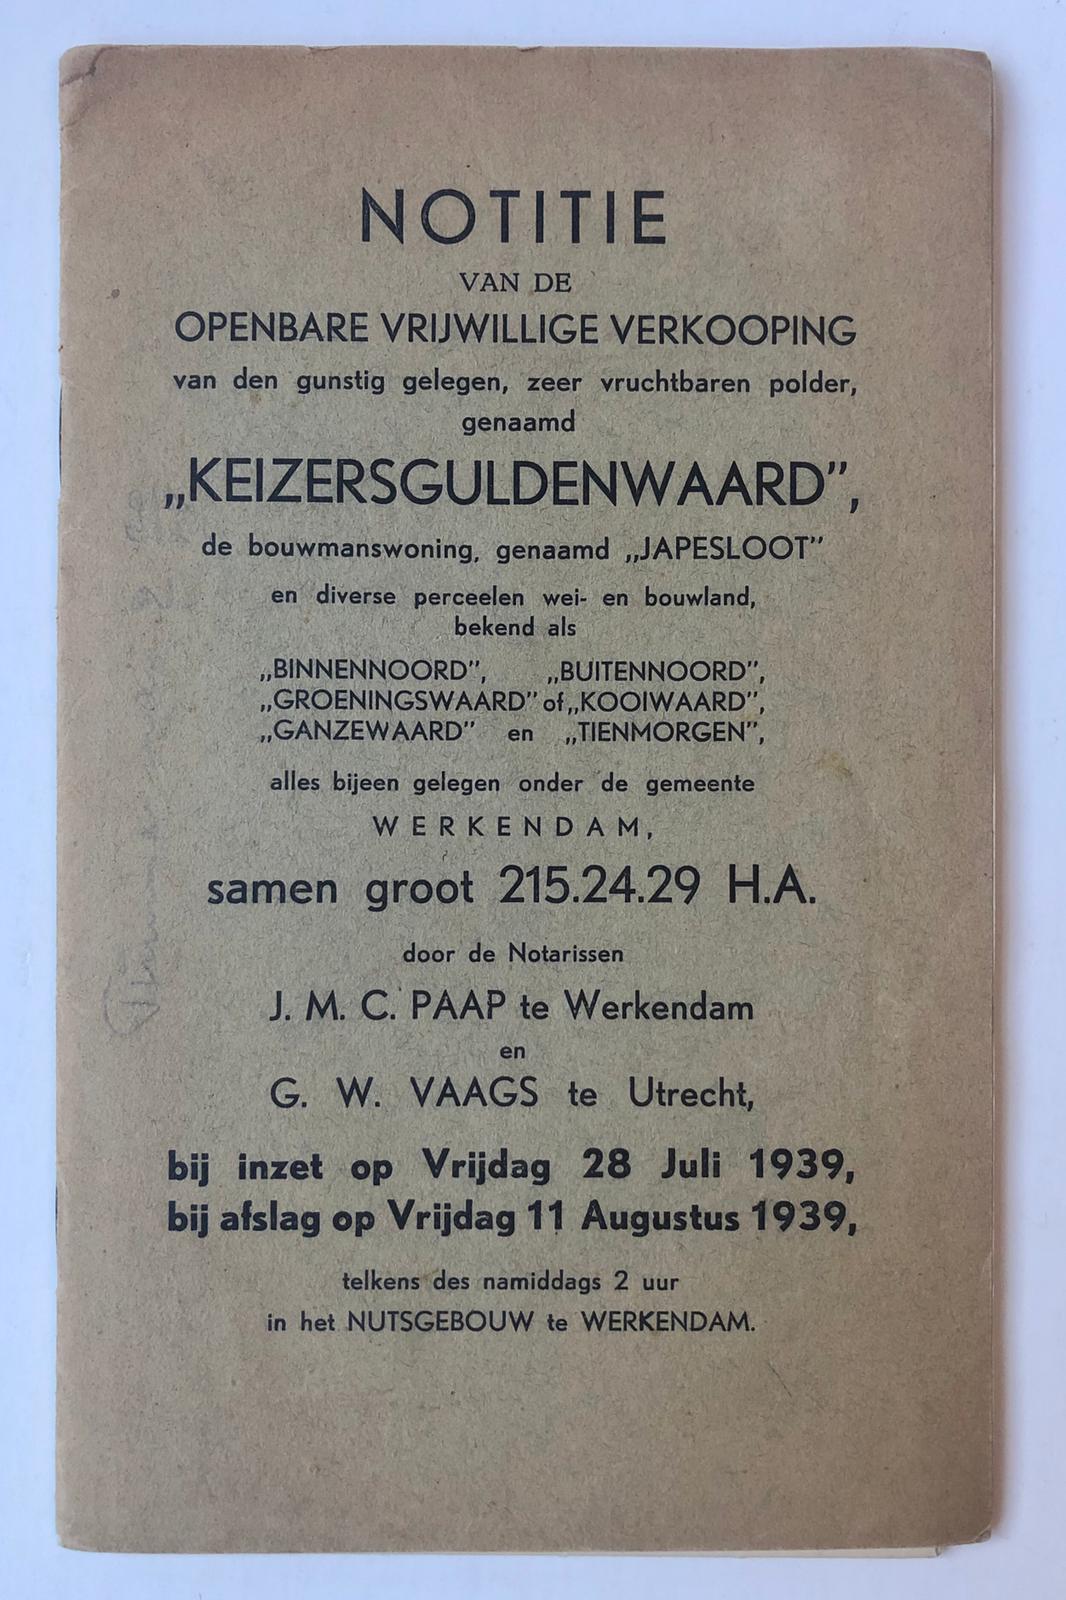 [VEILINGBOEKJE ONROEREND GOED] - [Veilingboekje betreffende onroerend goed Werkendam, Noord-Brabant] Notitie van de Openbare Verkooping van een polder, een bouwmanswoning en percelen land onder Werkendam, Notarissen J. M. C. Paap te Werkendam en G. W. Vaags te Utrecht, C. B. van Driel, Werkendam 1939.